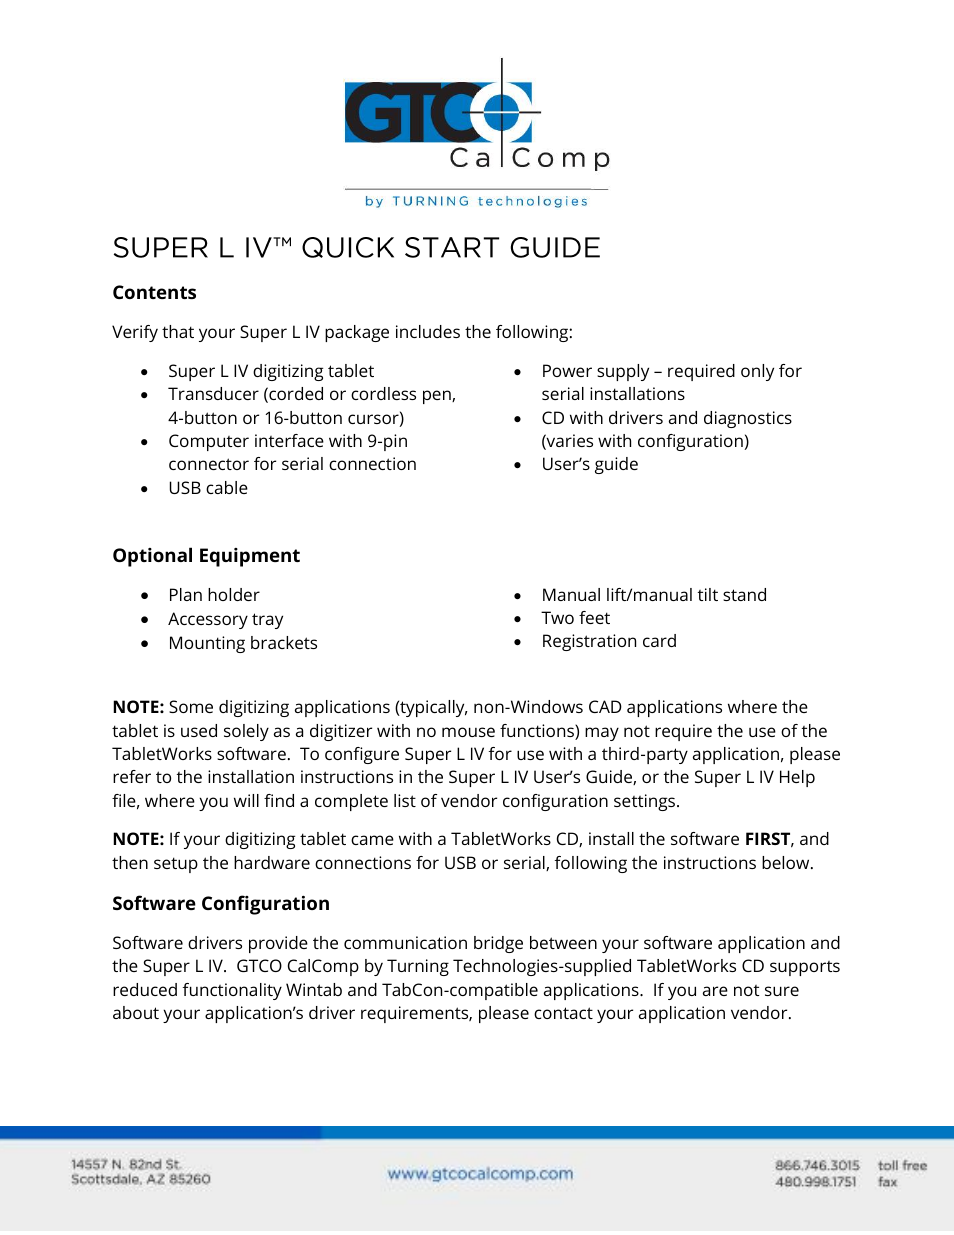 Super L IV - Quick Start Guide